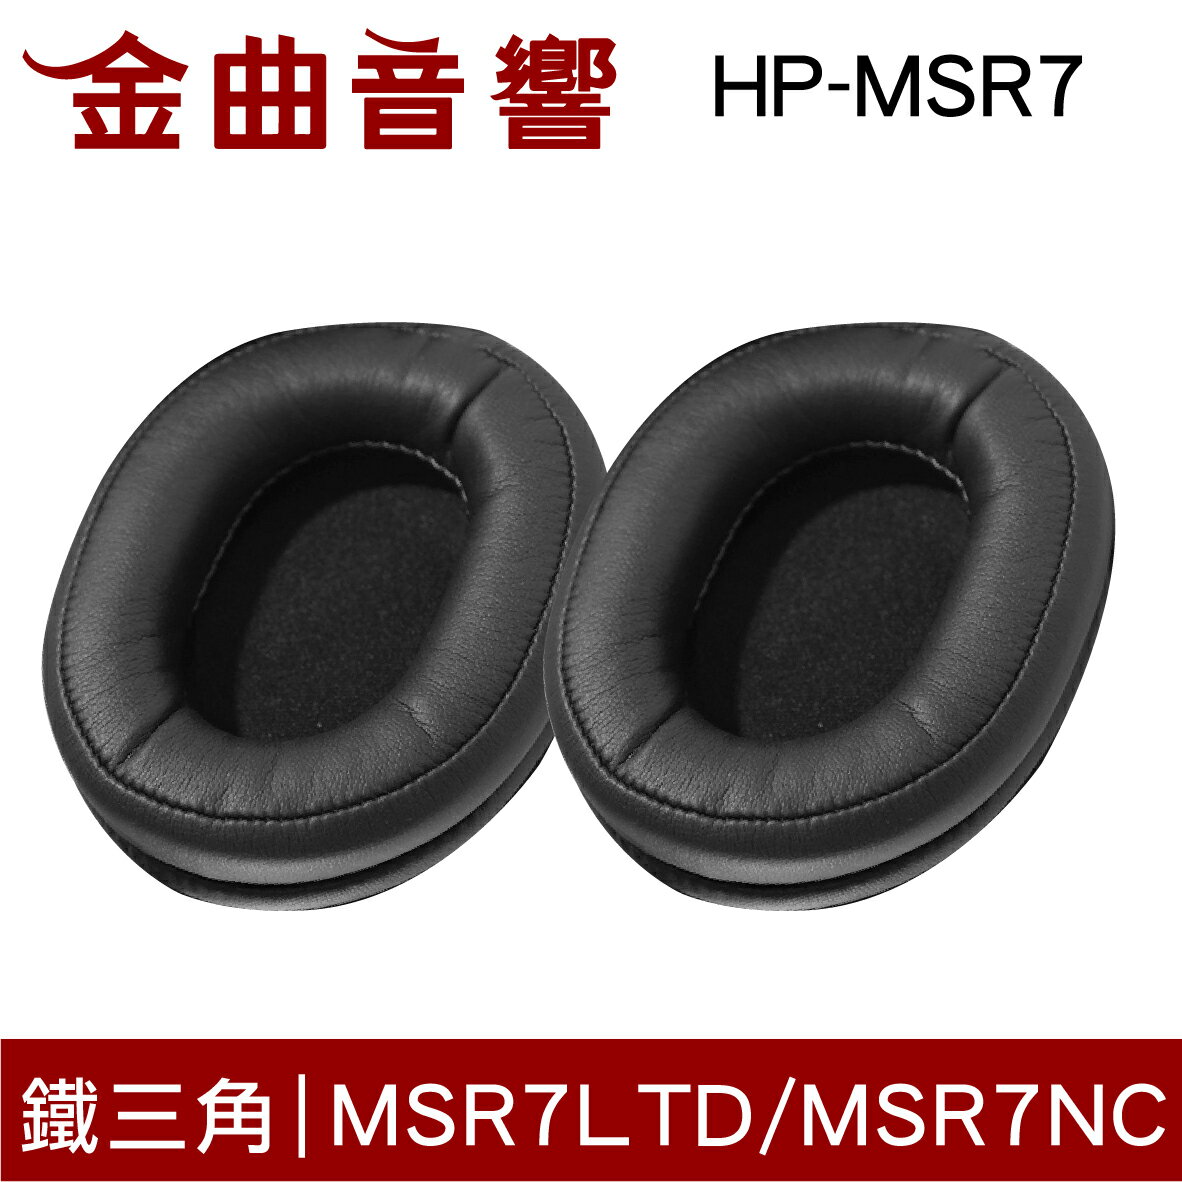 鐵三角 HP-MSR7 替換耳罩 一對 ATH-MSR7 MSR7LTD MSR7NC DSR7BT 適用 | 金曲音響